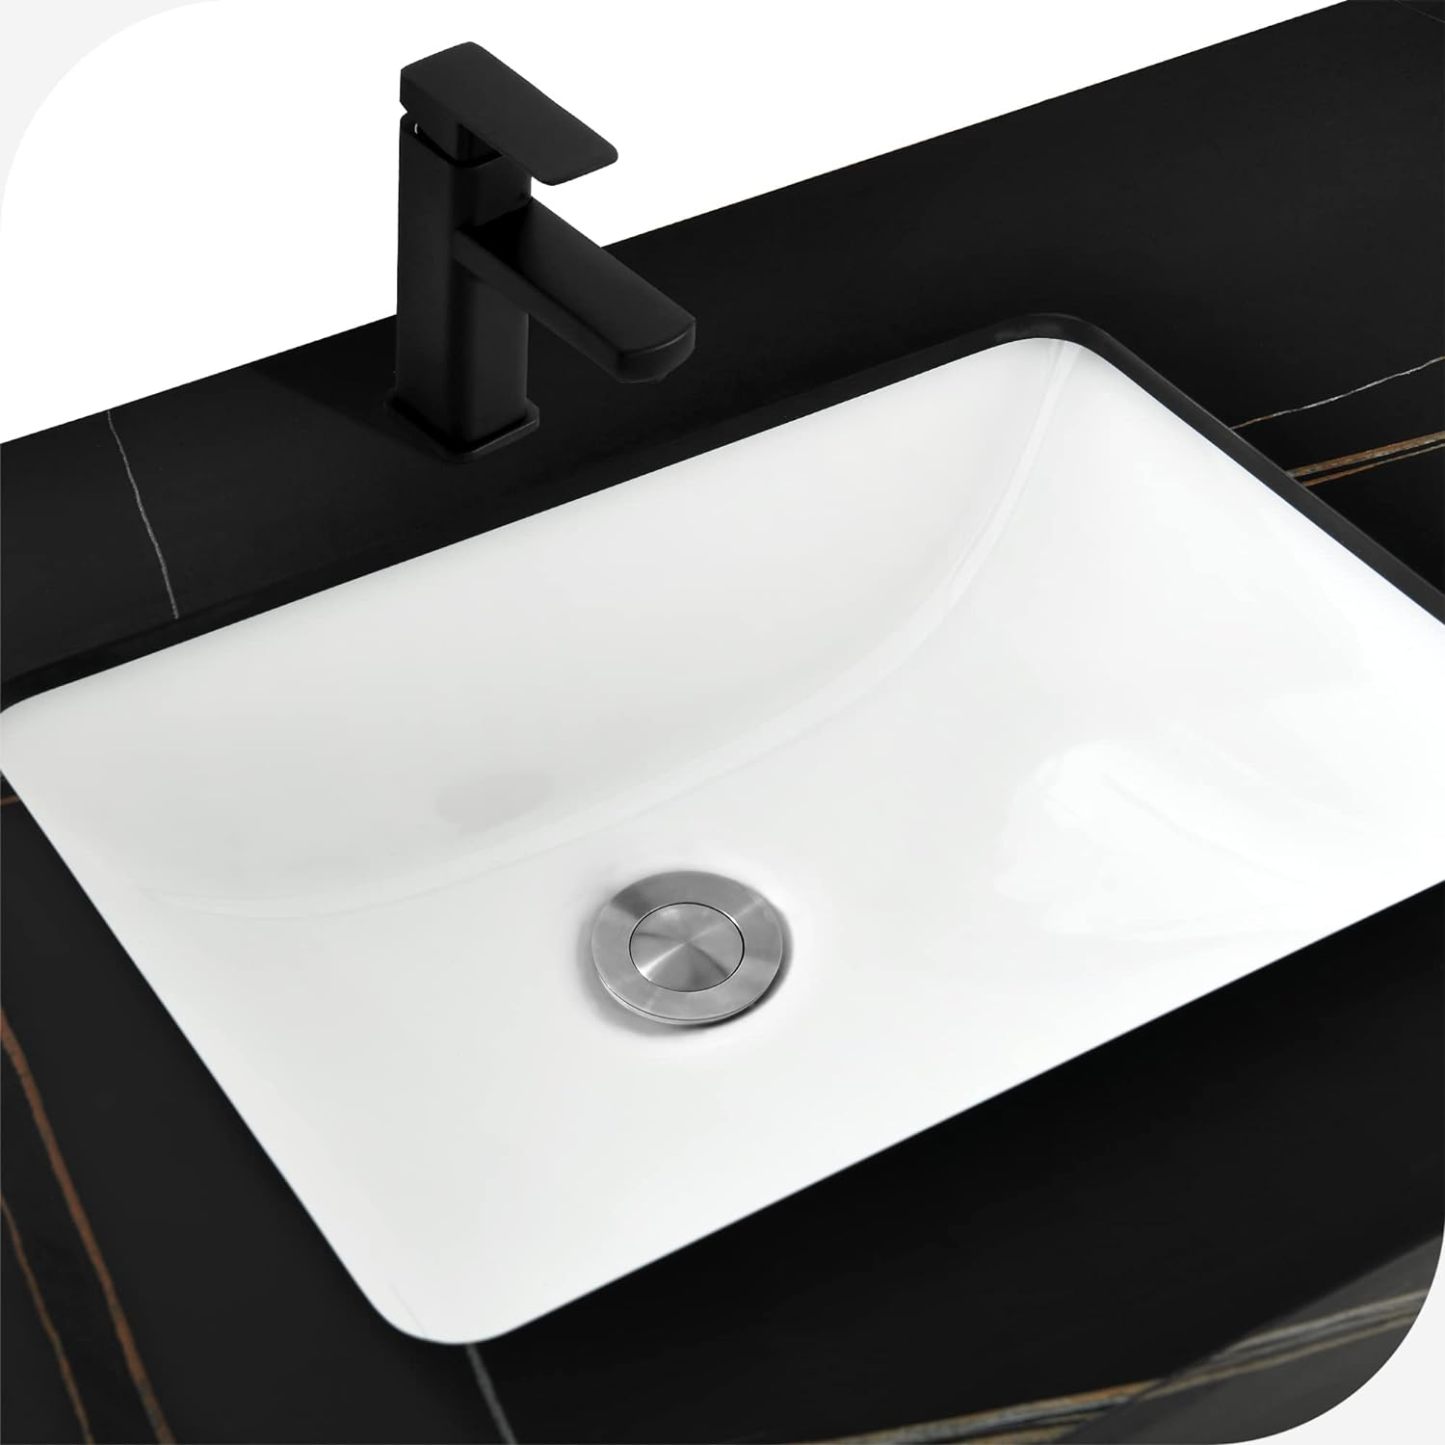 48 Inch Floating Bathroom Vanity, Wall Mounted Bathroom Vanity with Ceramic Basin Sink